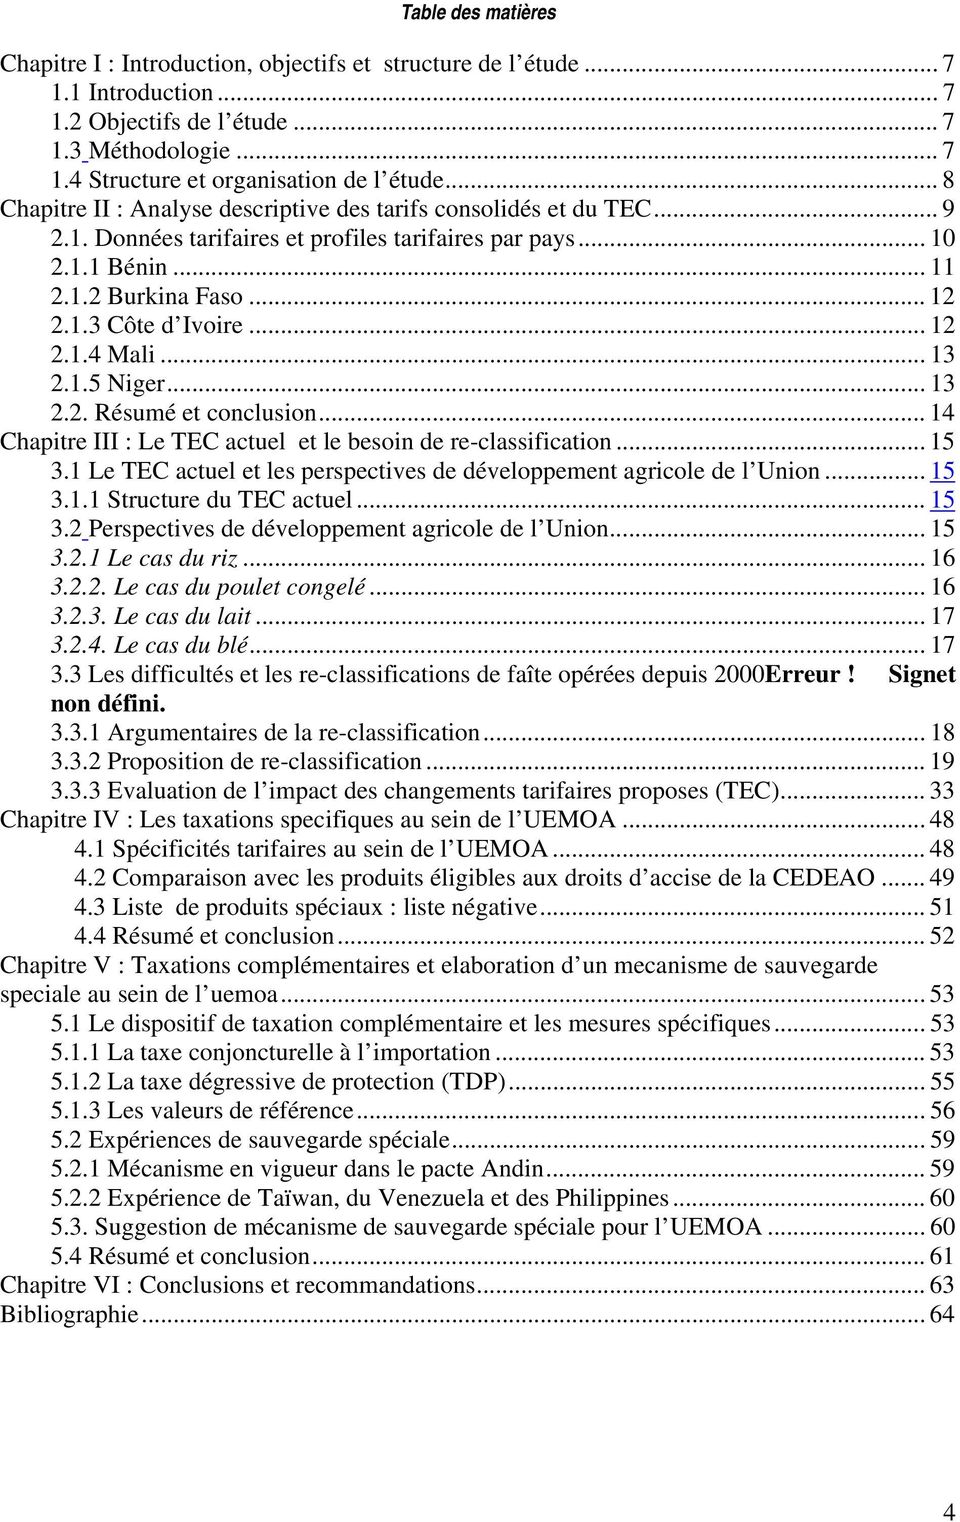 .. 12 2.1.4 Mali... 13 2.1.5 Niger... 13 2.2. Résumé et conclusion... 14 Chapitre III : Le TEC actuel et le besoin de re-classification... 15 3.